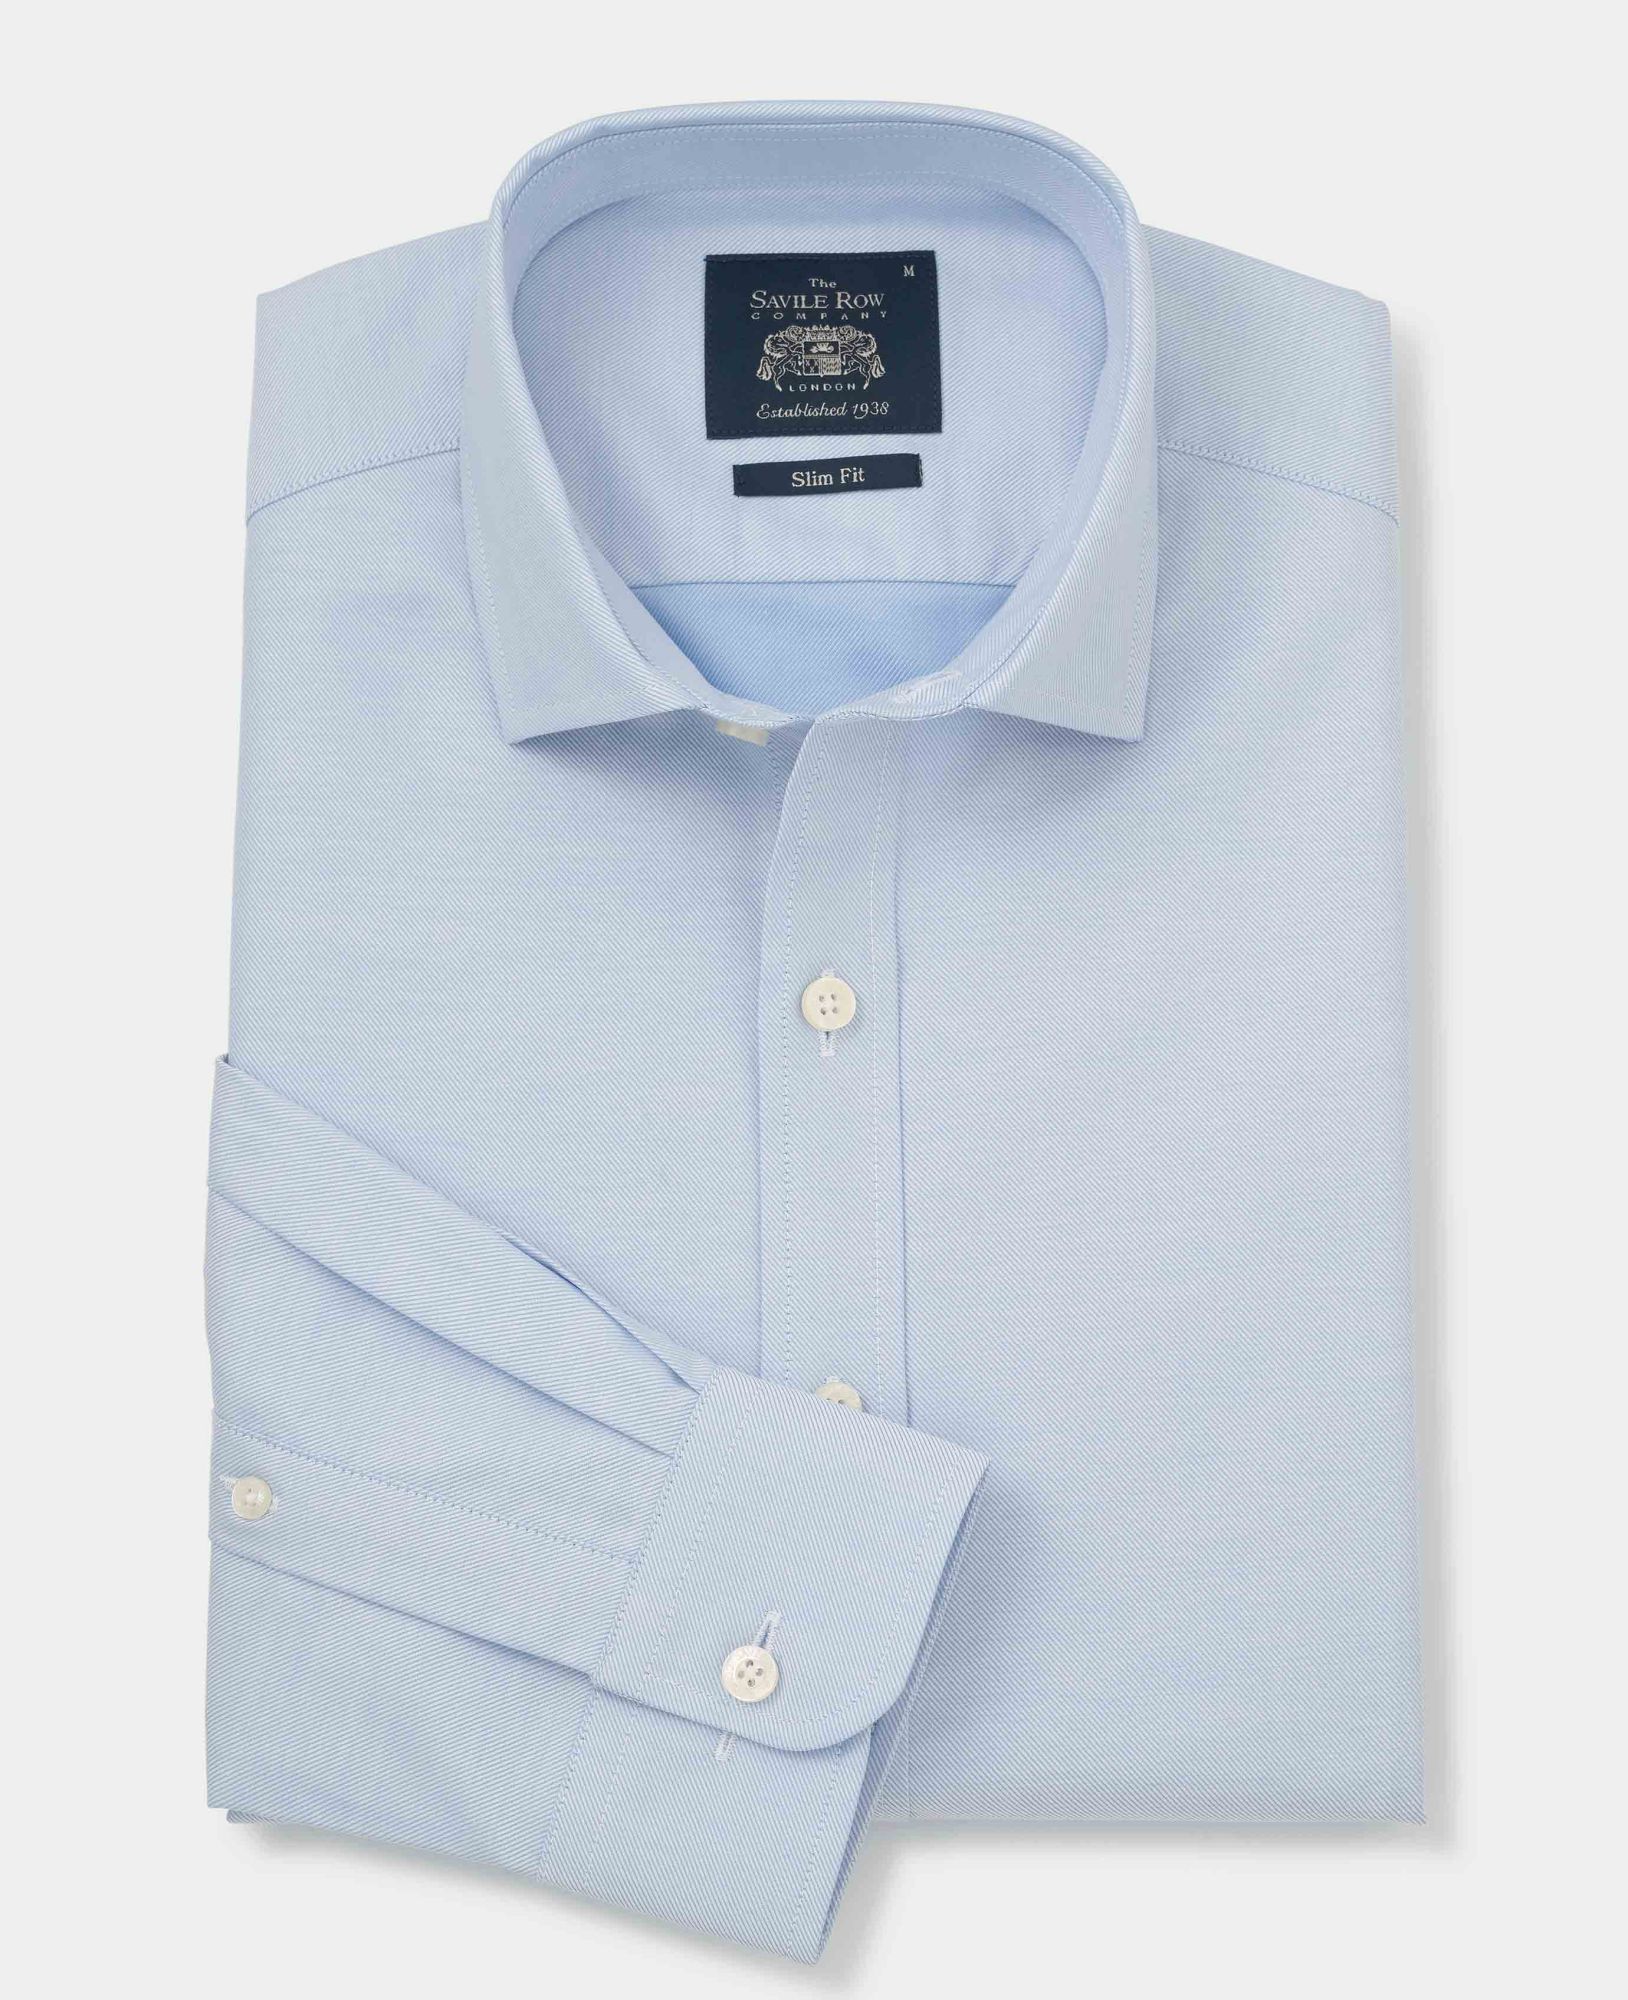 Blue Twill Slim Fit Shirt - Single Cuff L Standard